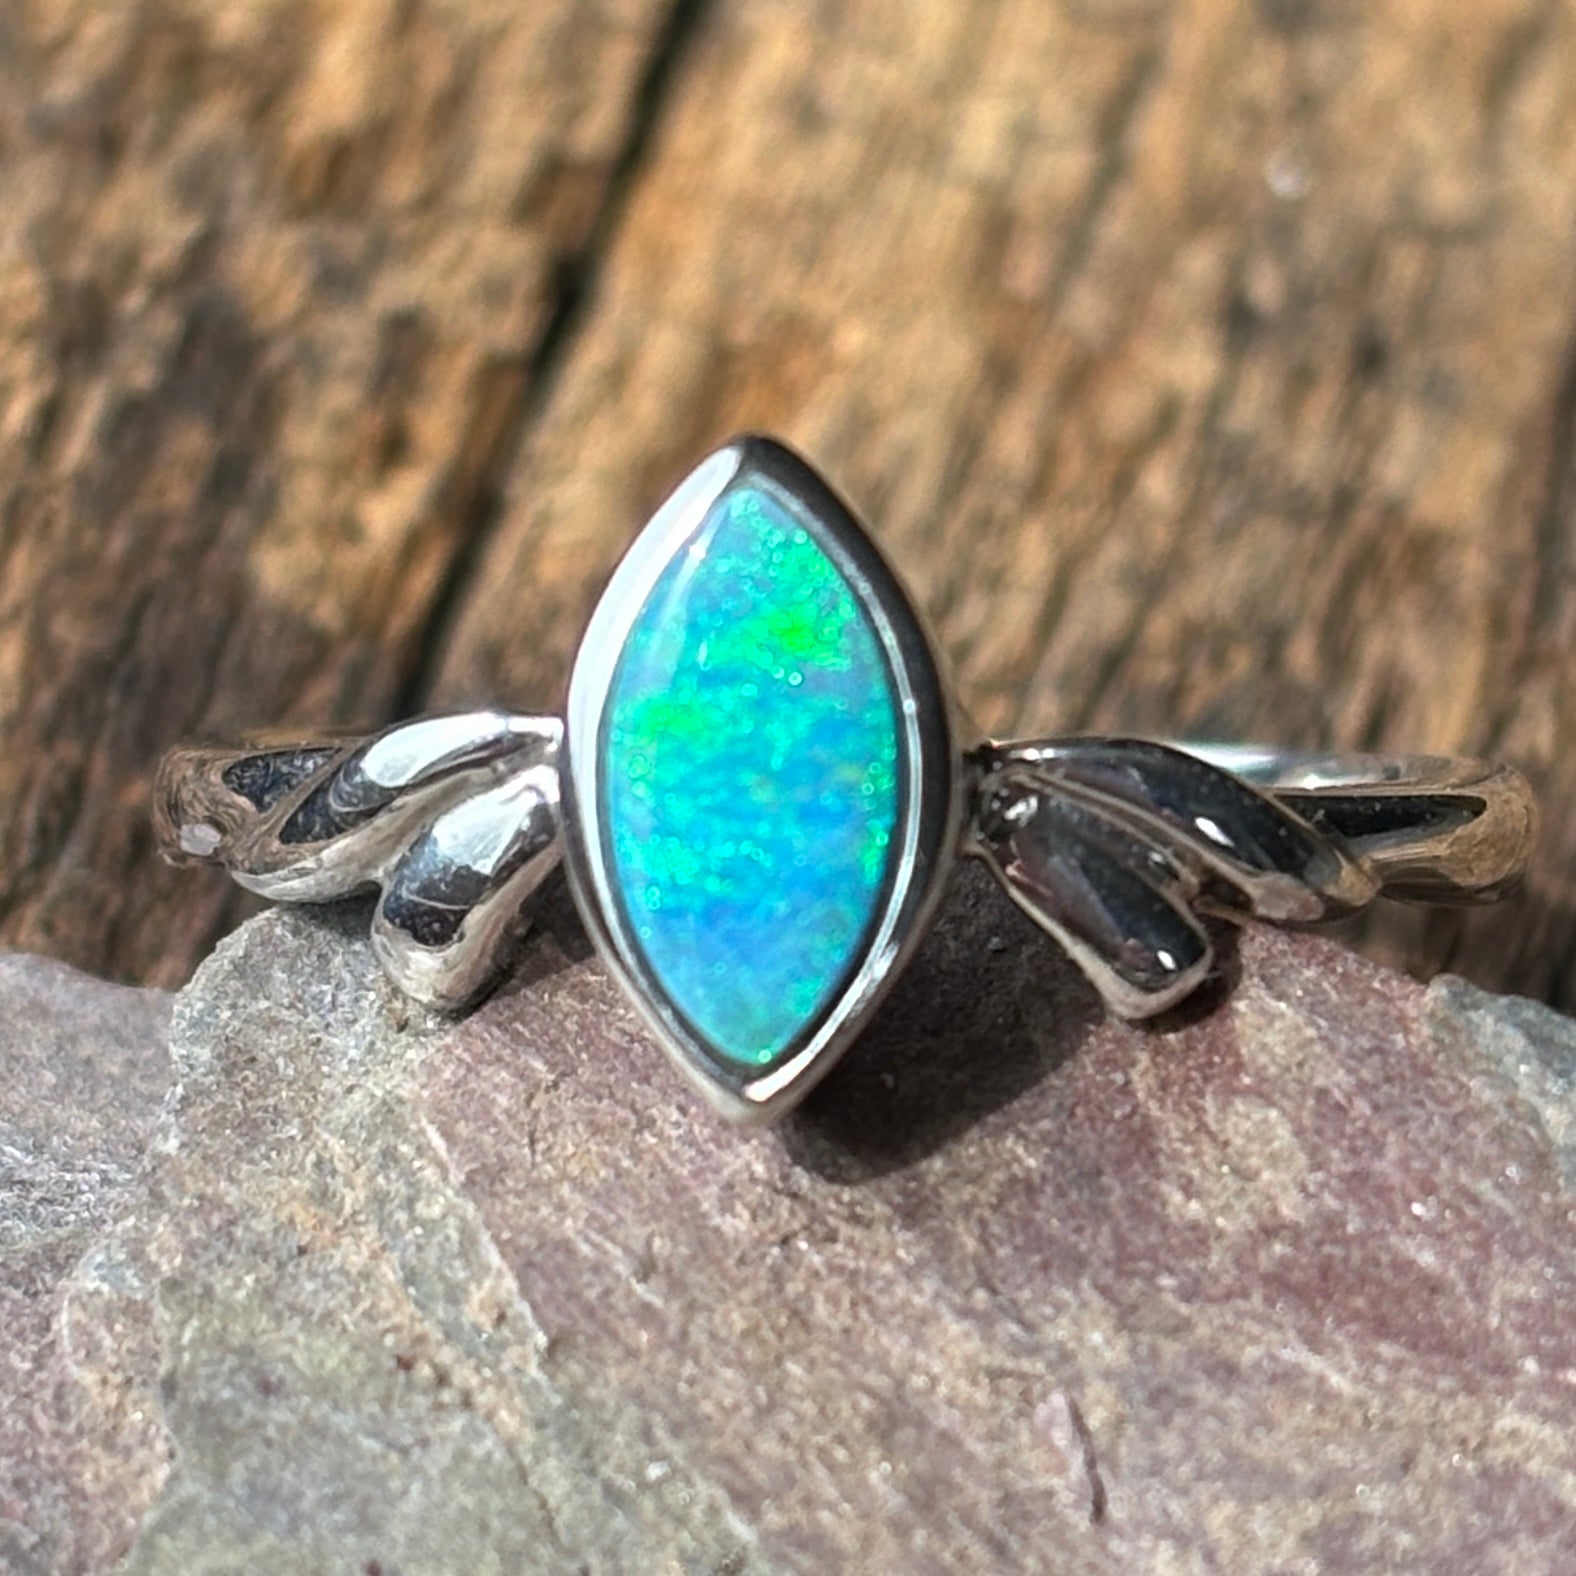 Ocean Blue Australian Opal Doublet Ring